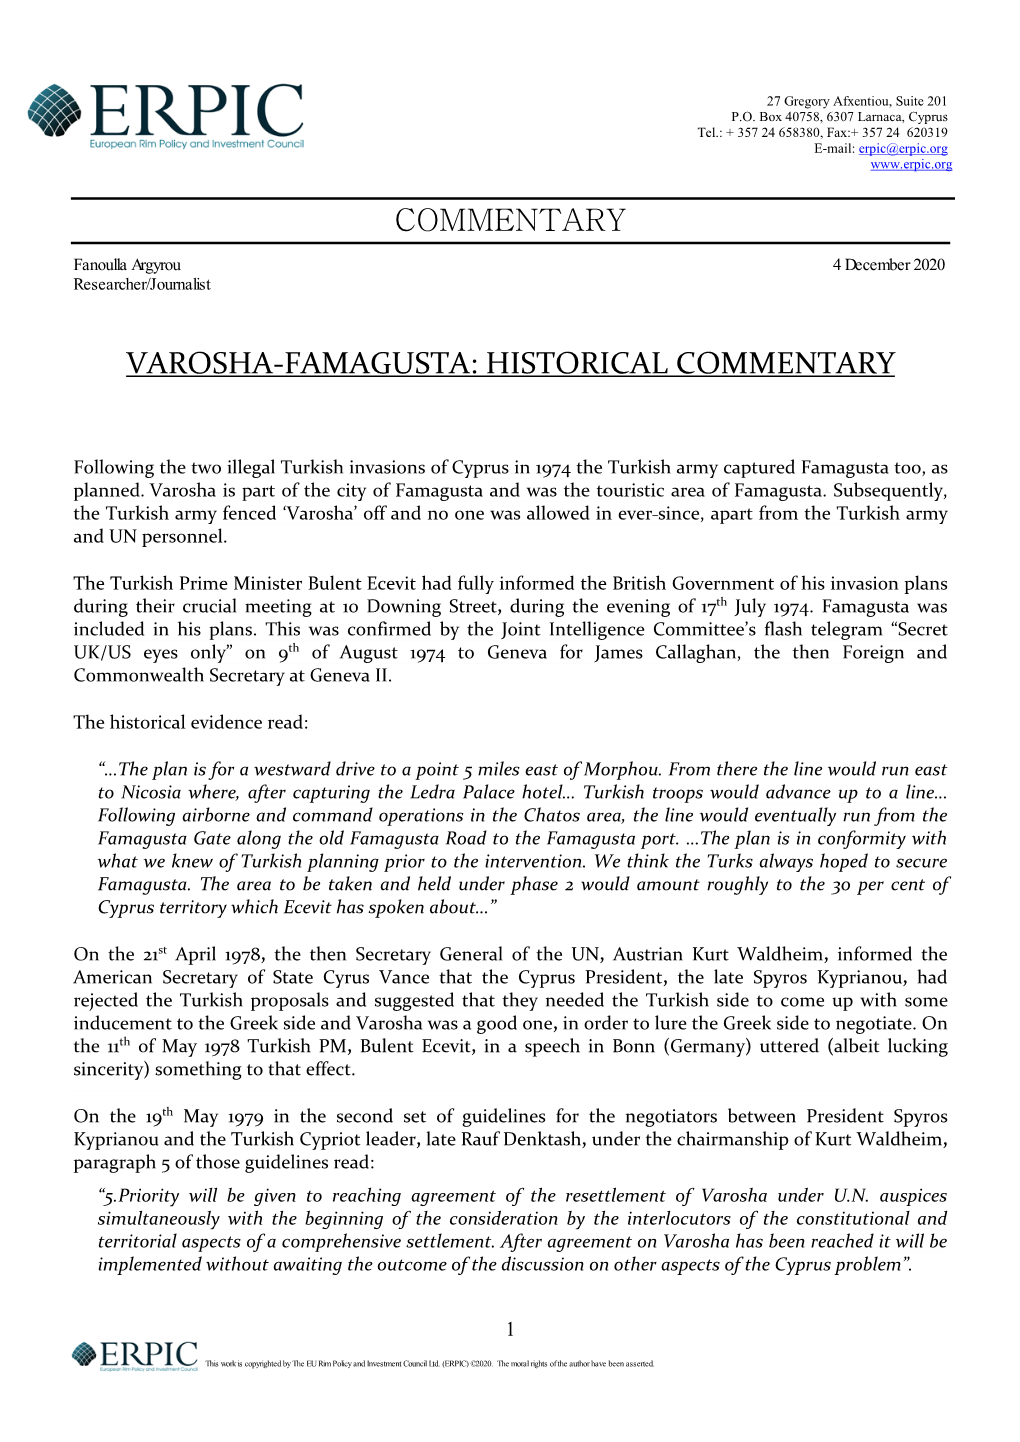 Varosha-Famagusta: Historical Commentary